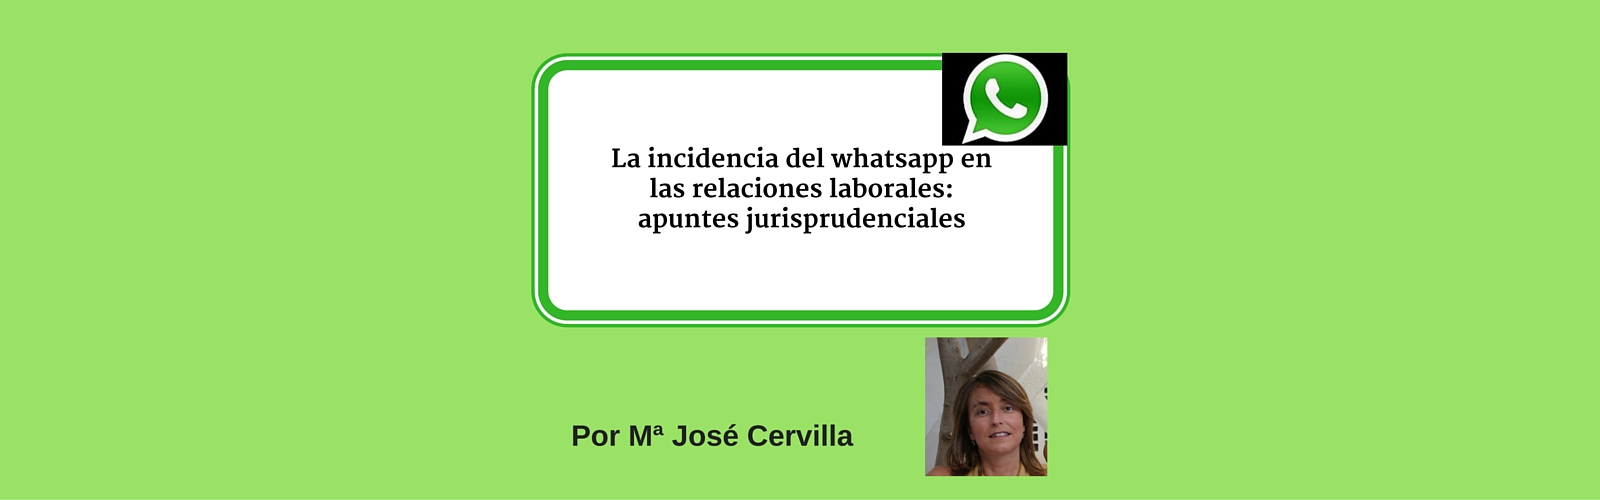 La incidencia de Whatsapp en las relaciones laborales: apuntes jurisprudenciales. Por Mª José Cervilla.